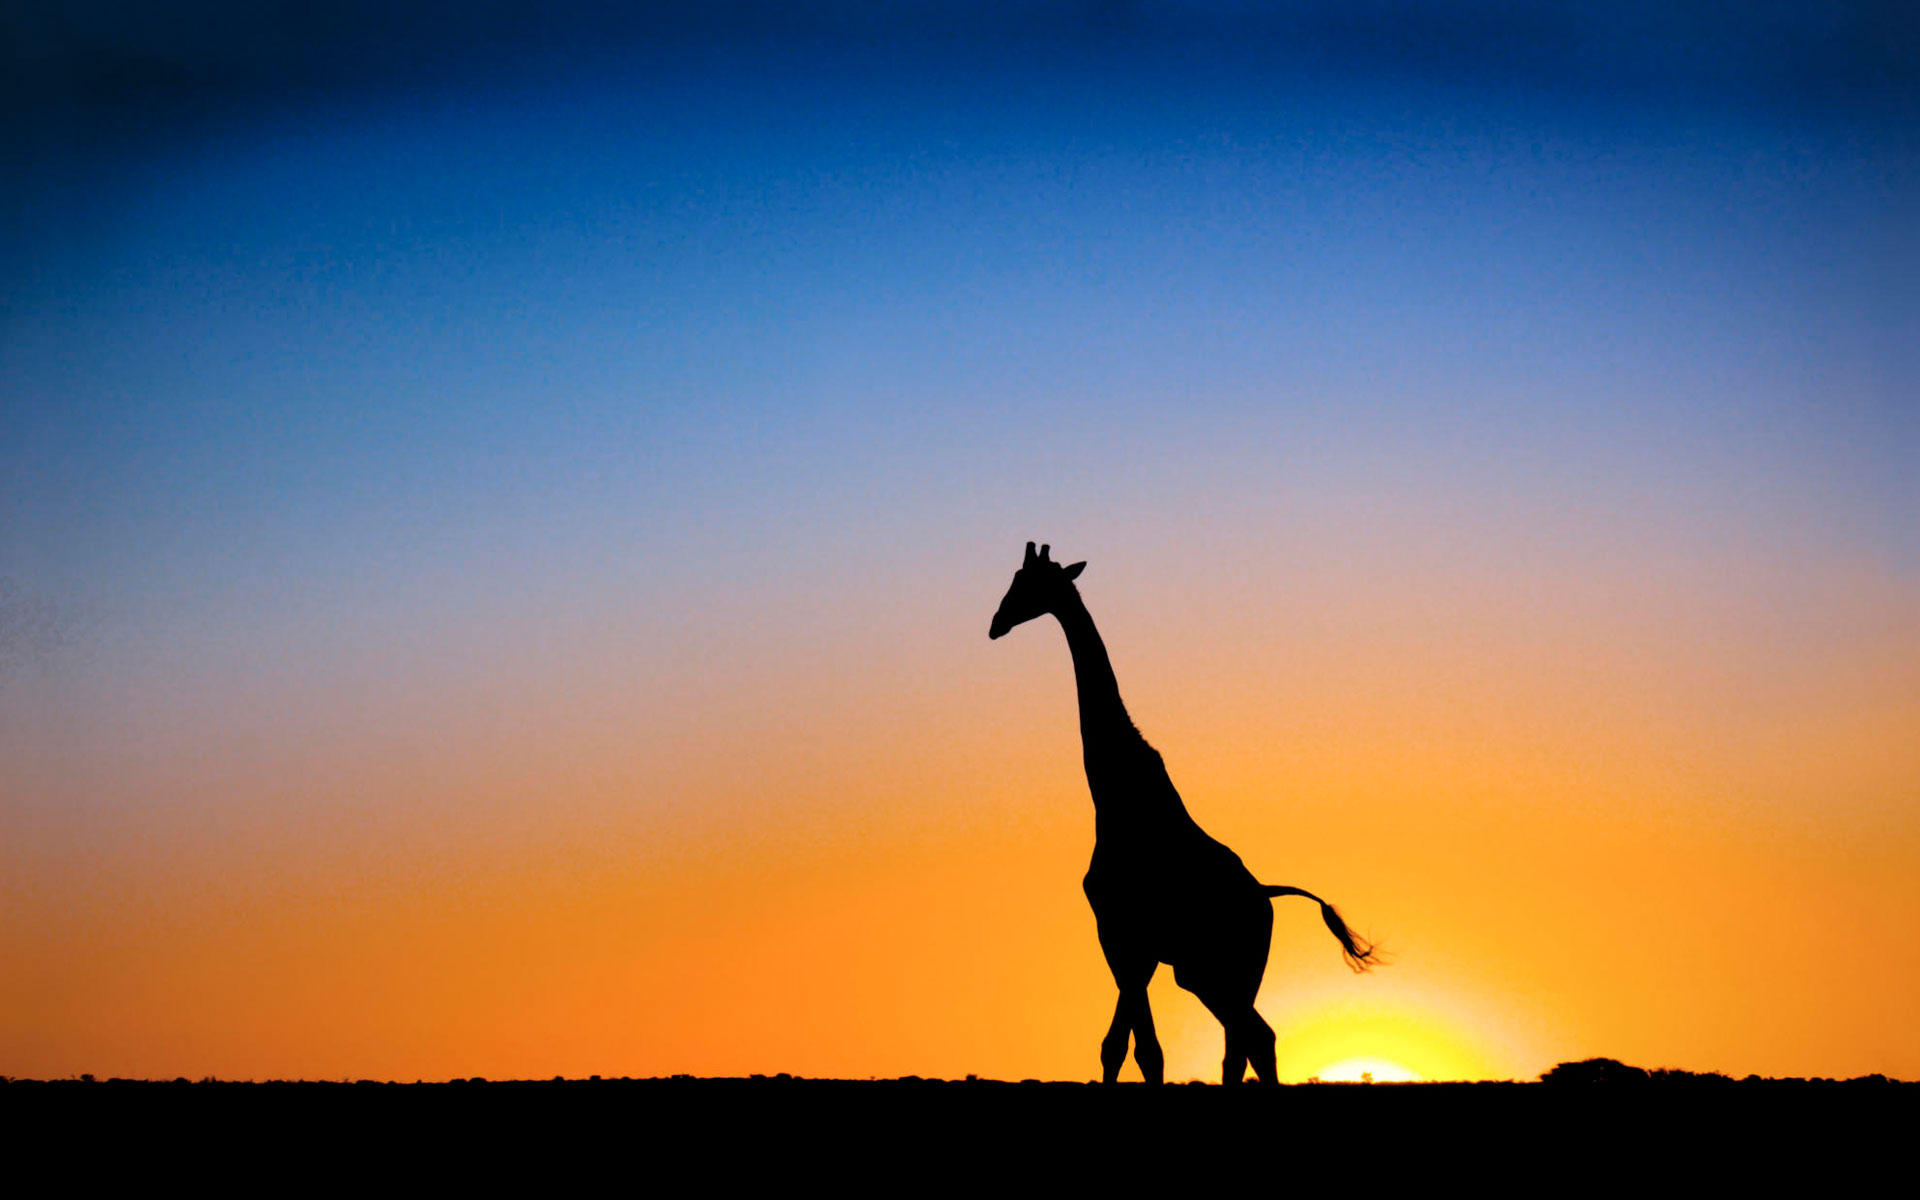 Sunset & Giraffe Botswana7277713867 - Sunset & Giraffe Botswana - sunset, Puffin, Giraffe, Botswana